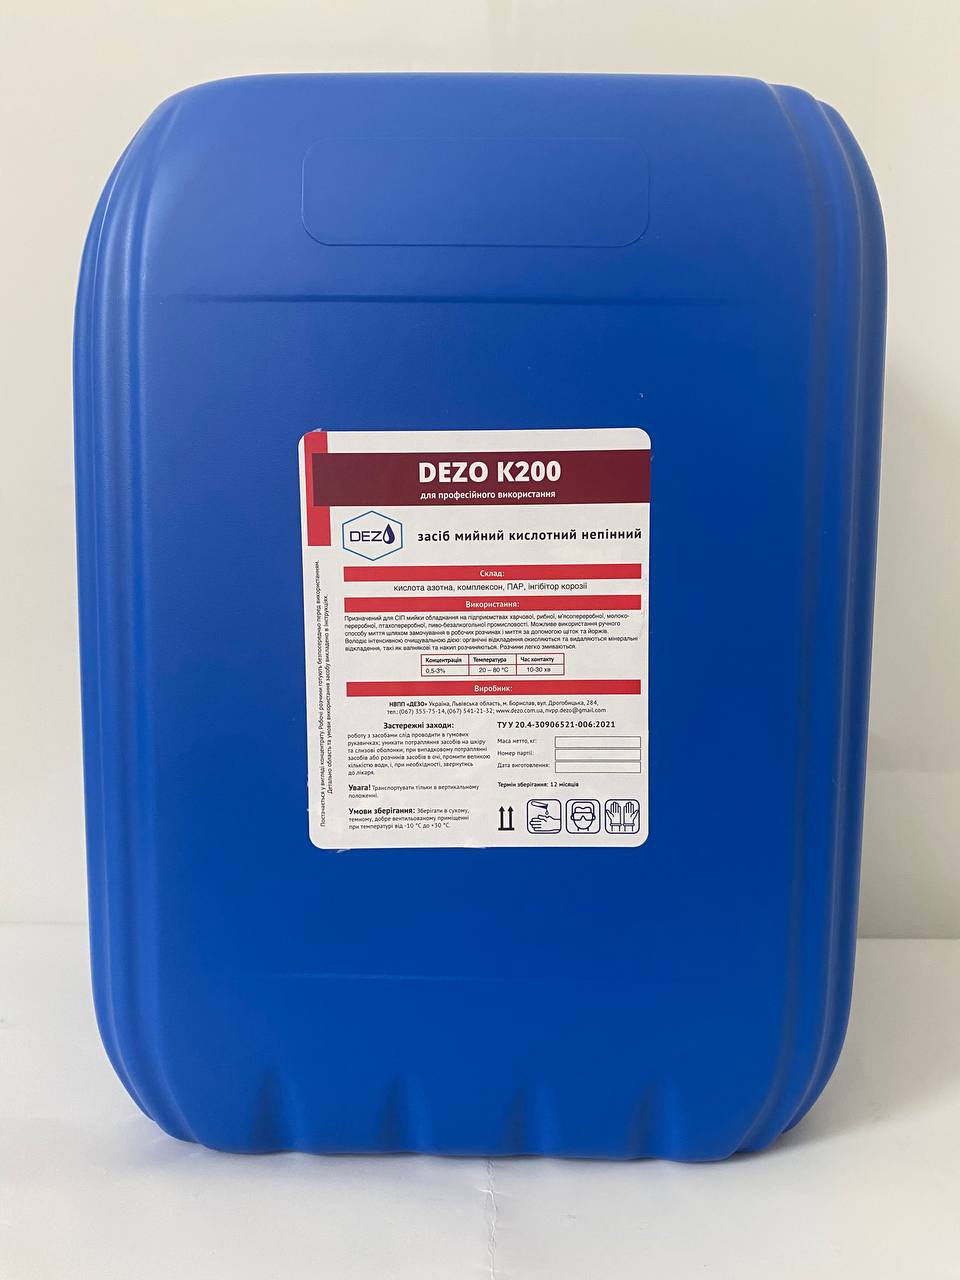 Засіб мийний кислотний непінний DEZO К200, 12 кг